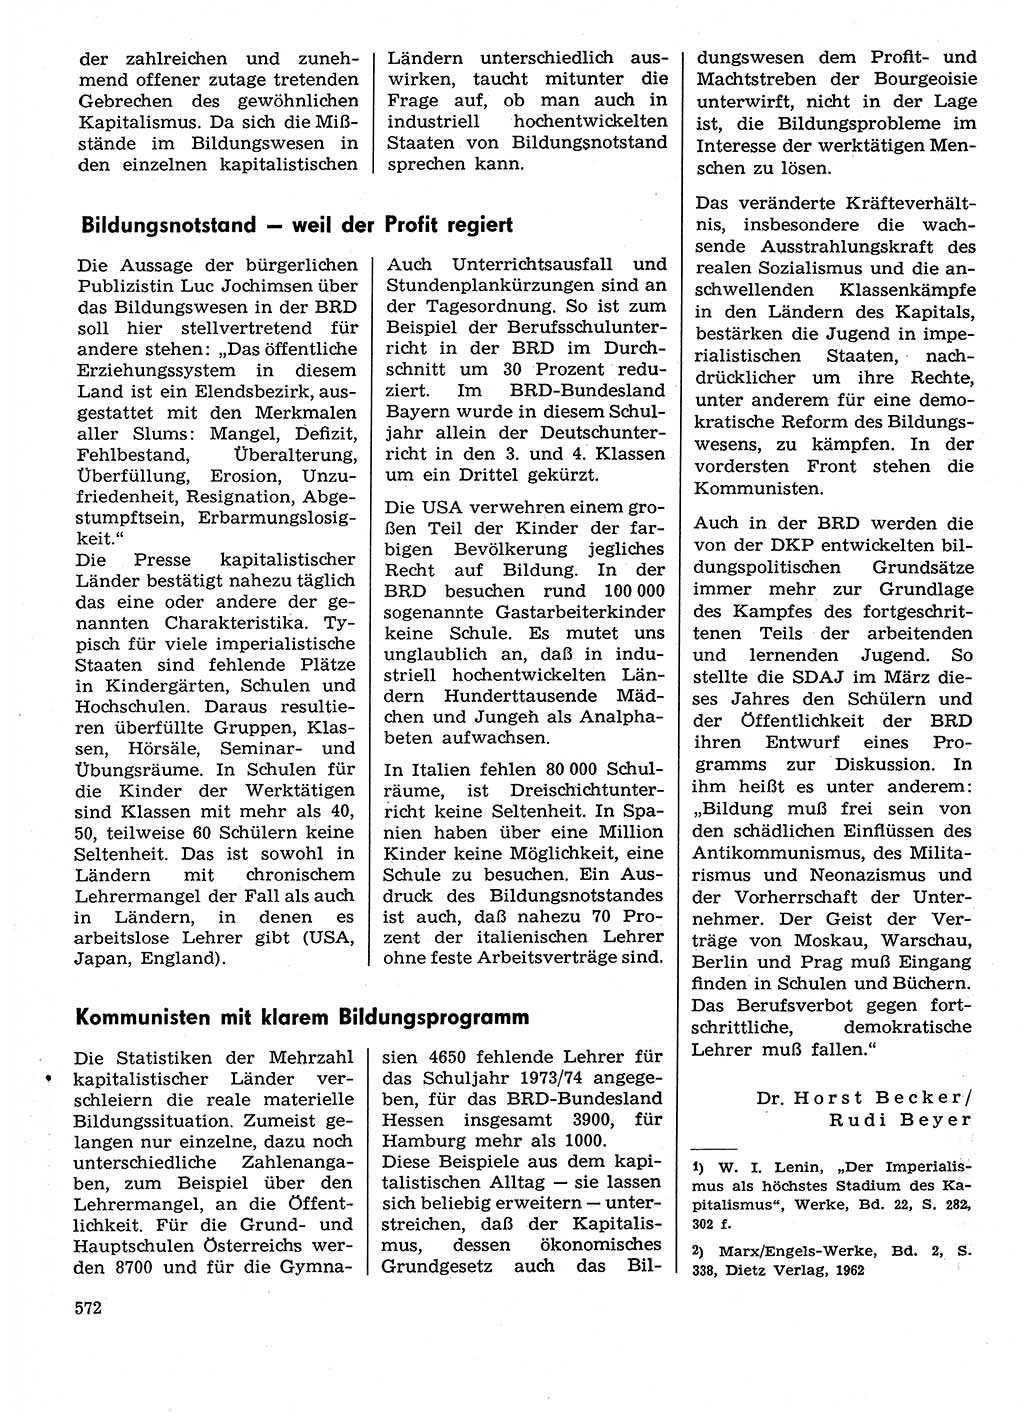 Neuer Weg (NW), Organ des Zentralkomitees (ZK) der SED (Sozialistische Einheitspartei Deutschlands) für Fragen des Parteilebens, 29. Jahrgang [Deutsche Demokratische Republik (DDR)] 1974, Seite 572 (NW ZK SED DDR 1974, S. 572)